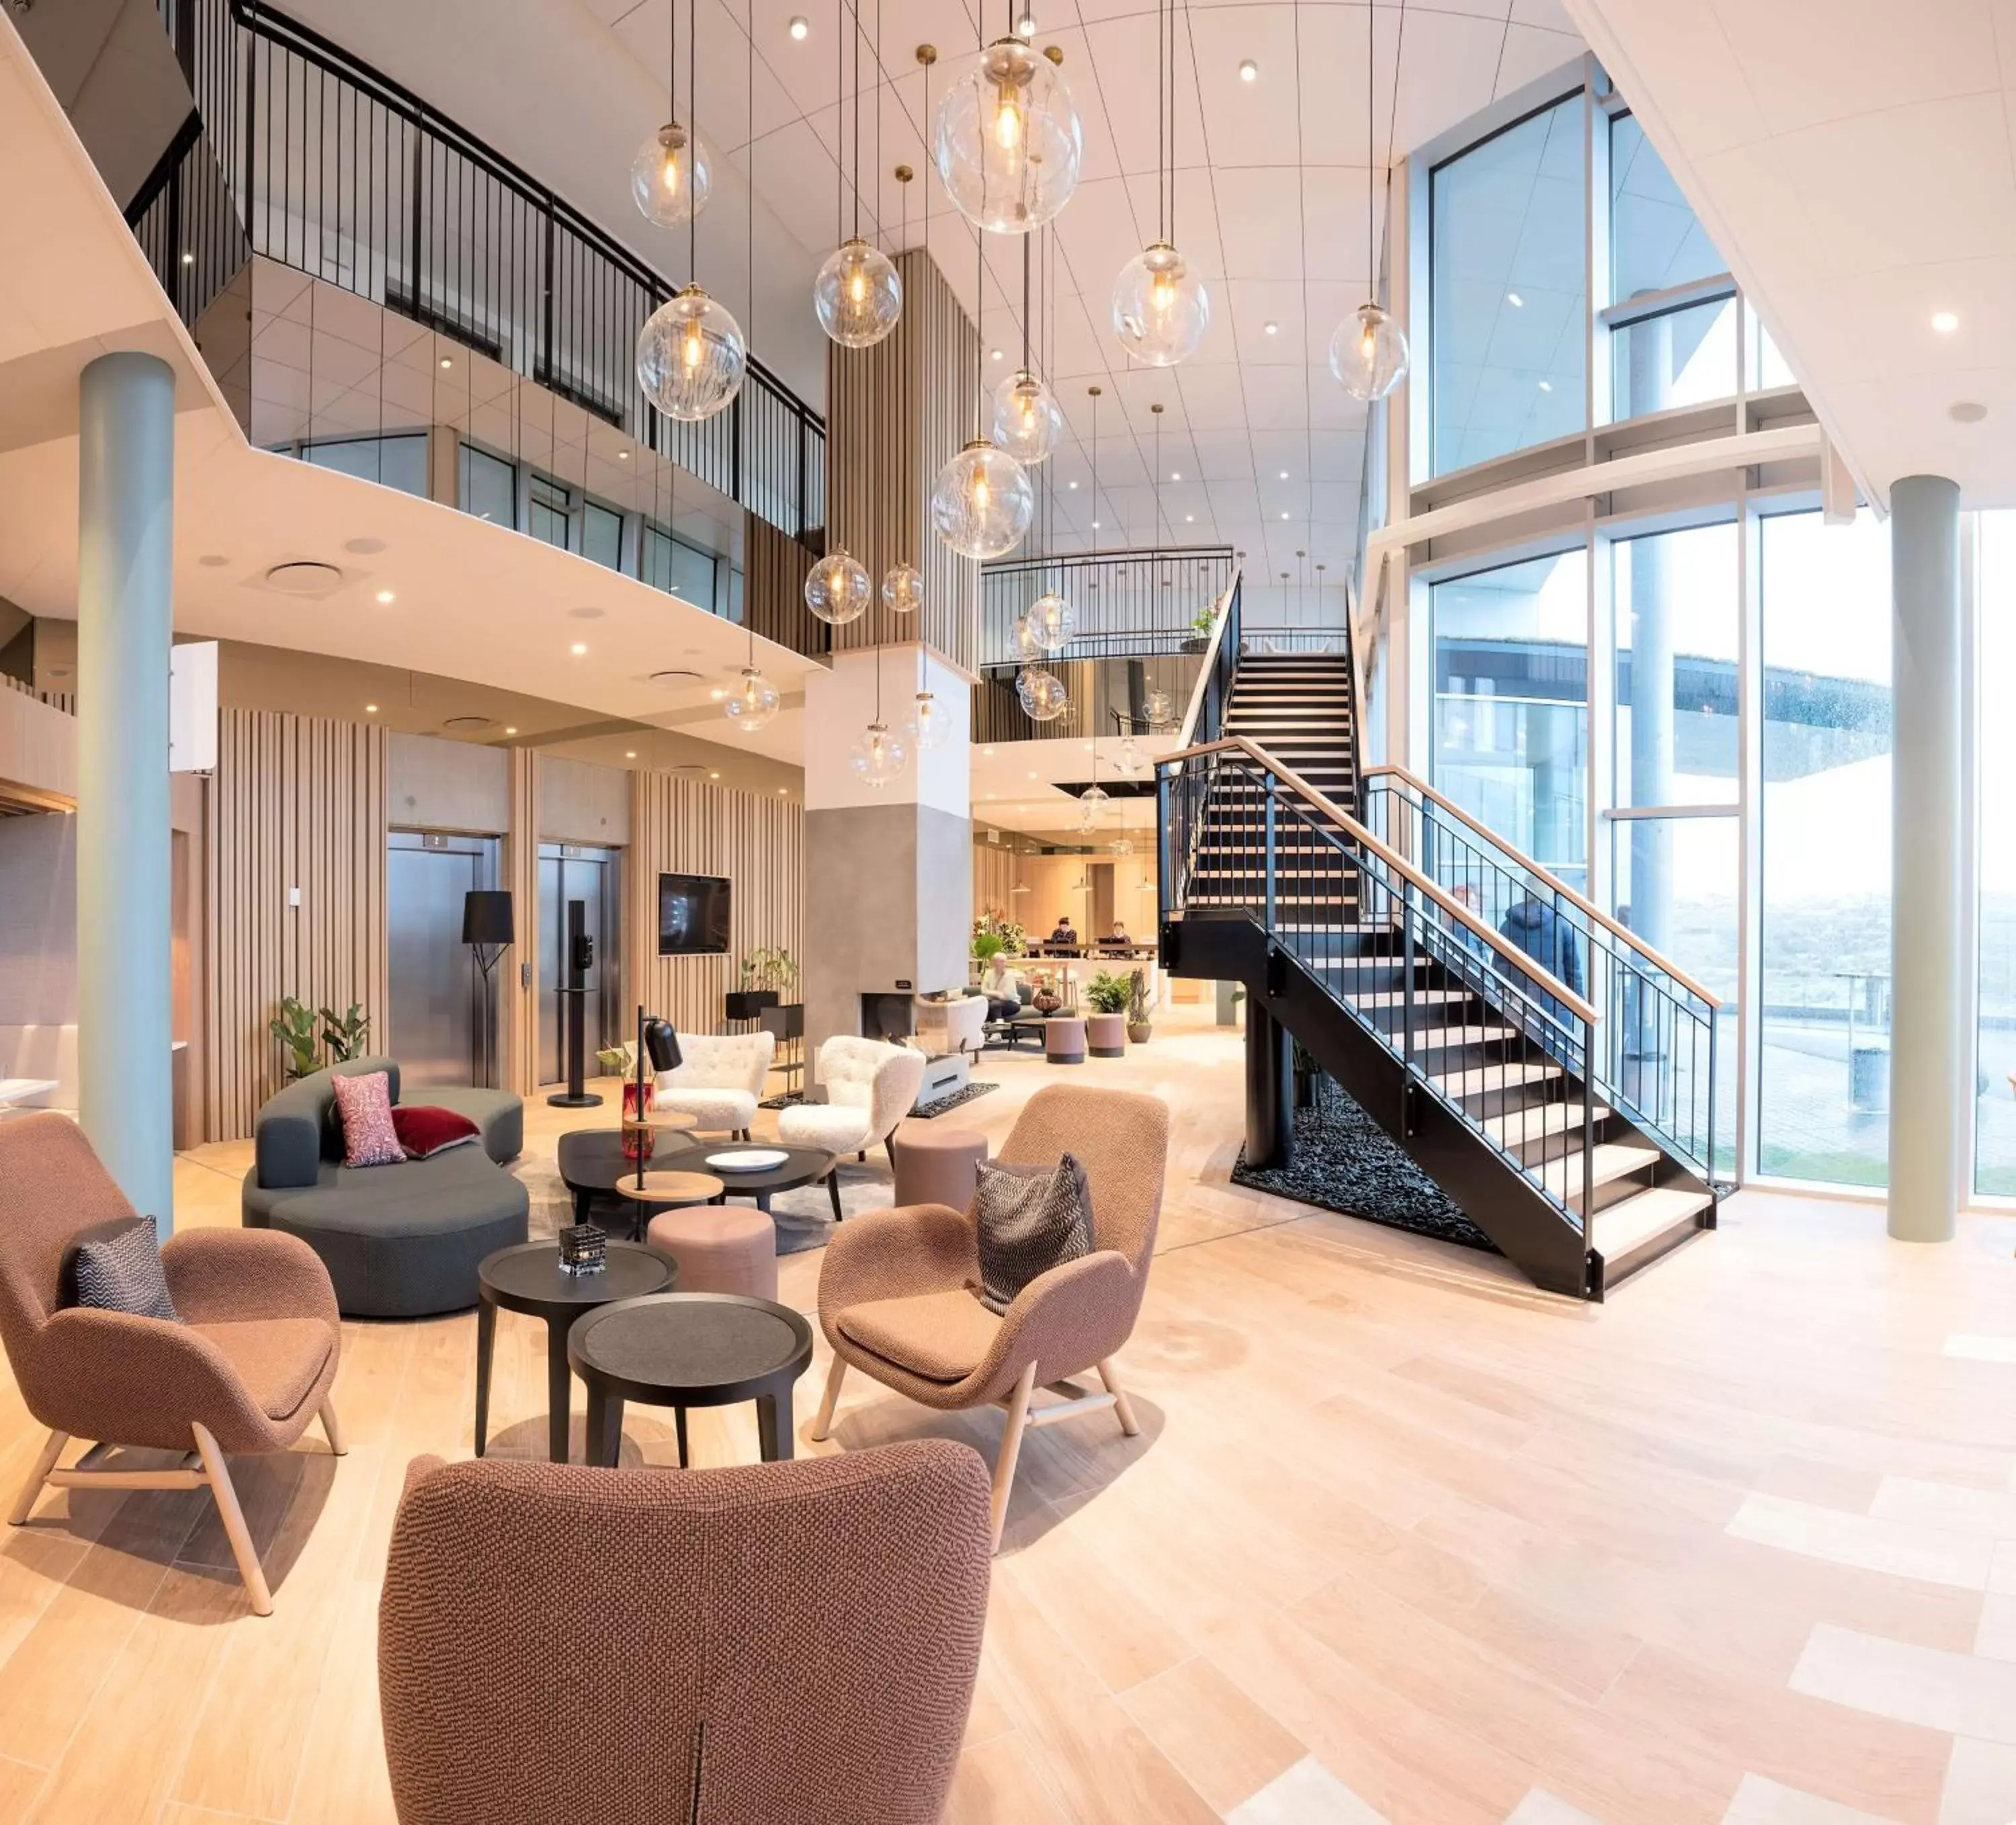 Lobby or reception, Lobby/Reception in Hilton Garden Inn Faroe Islands